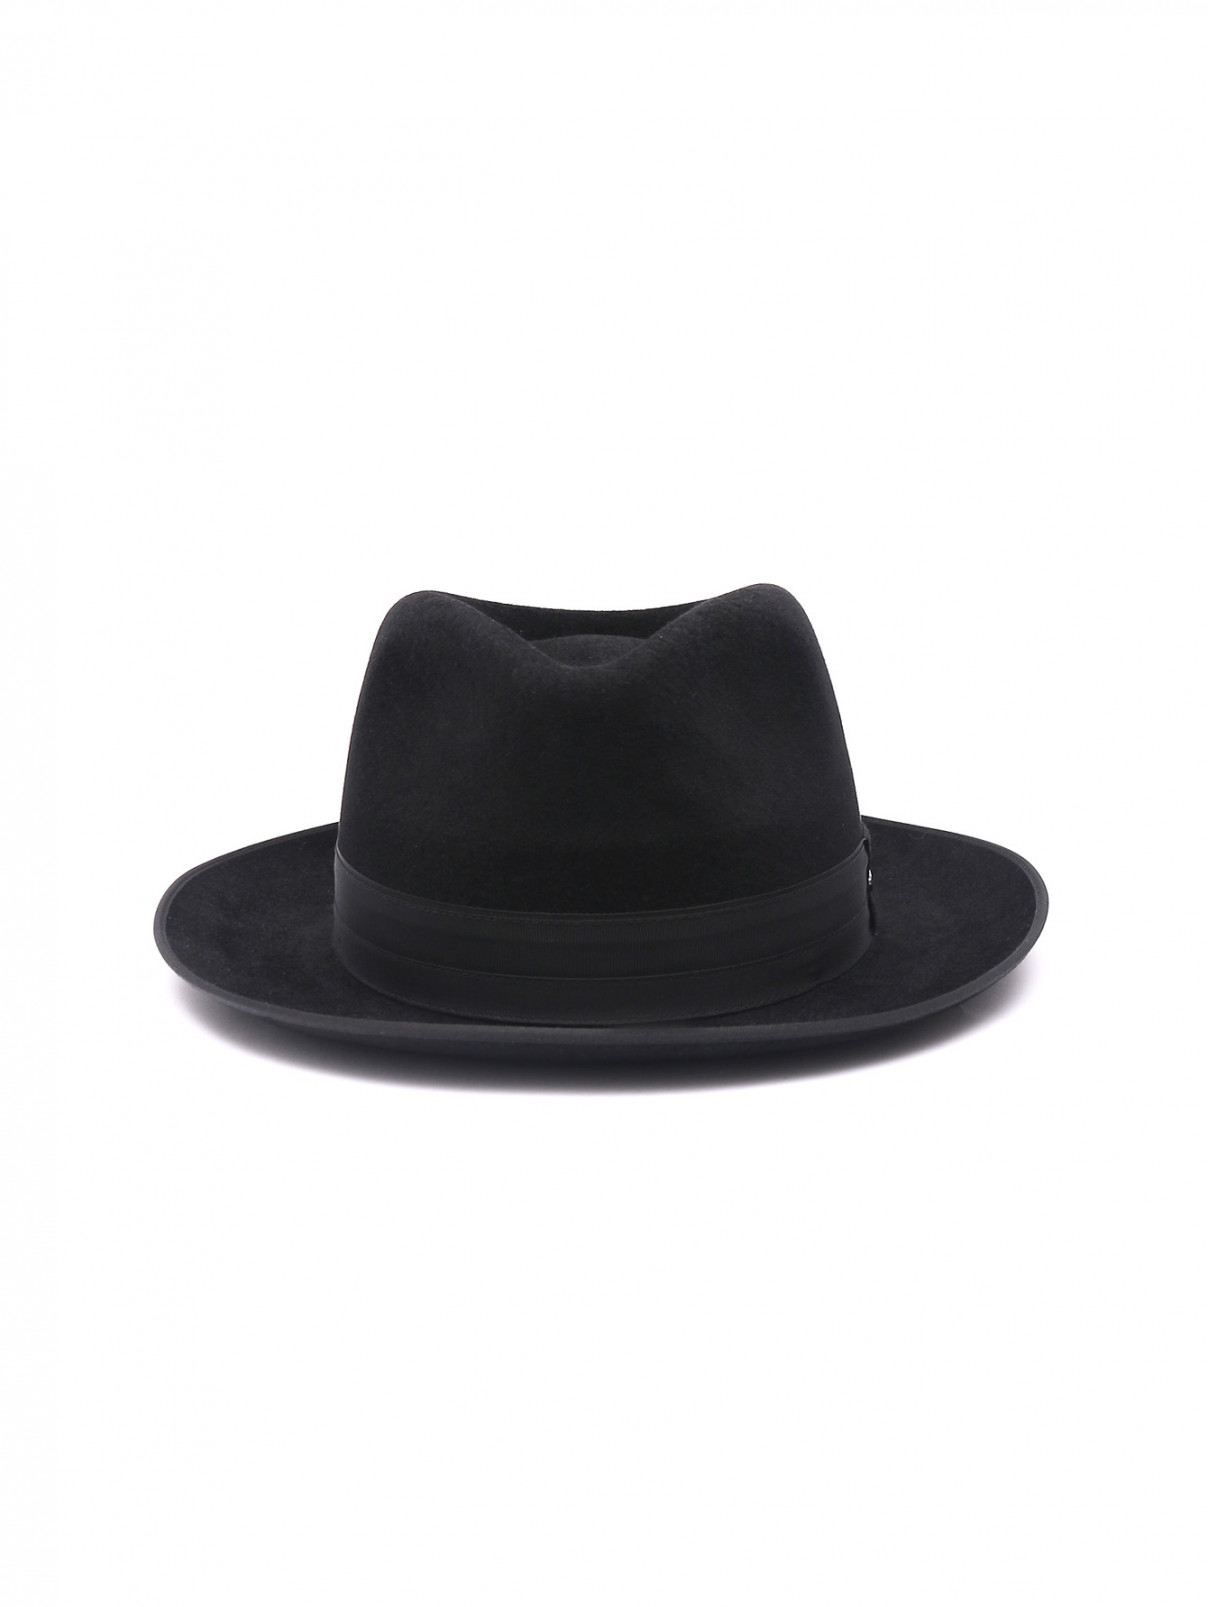 Шляпа из шерсти Stetson  –  Общий вид  – Цвет:  Черный